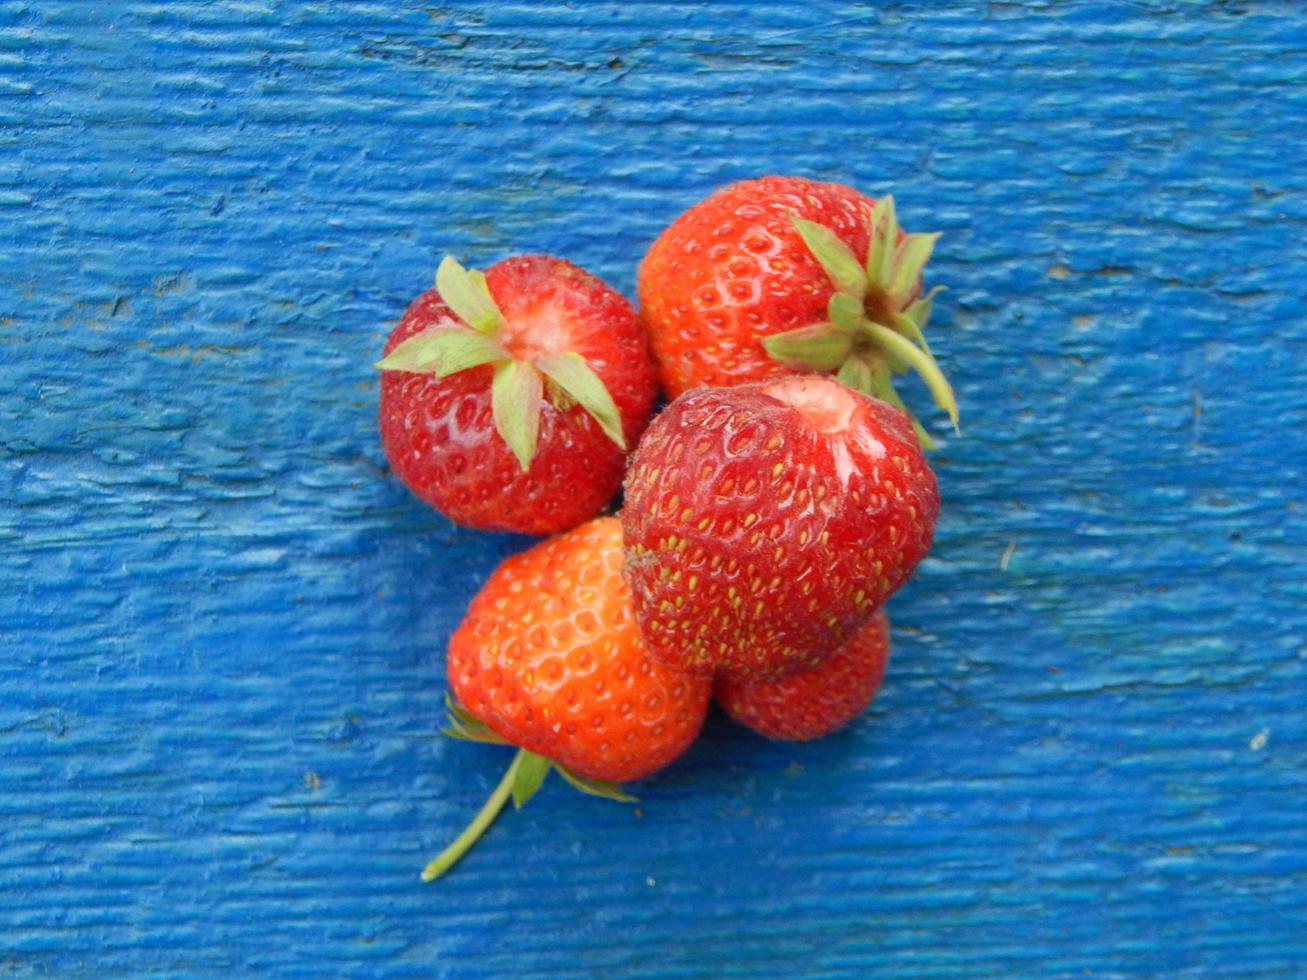 ramasser des fraises dans le jardin et le potager photo